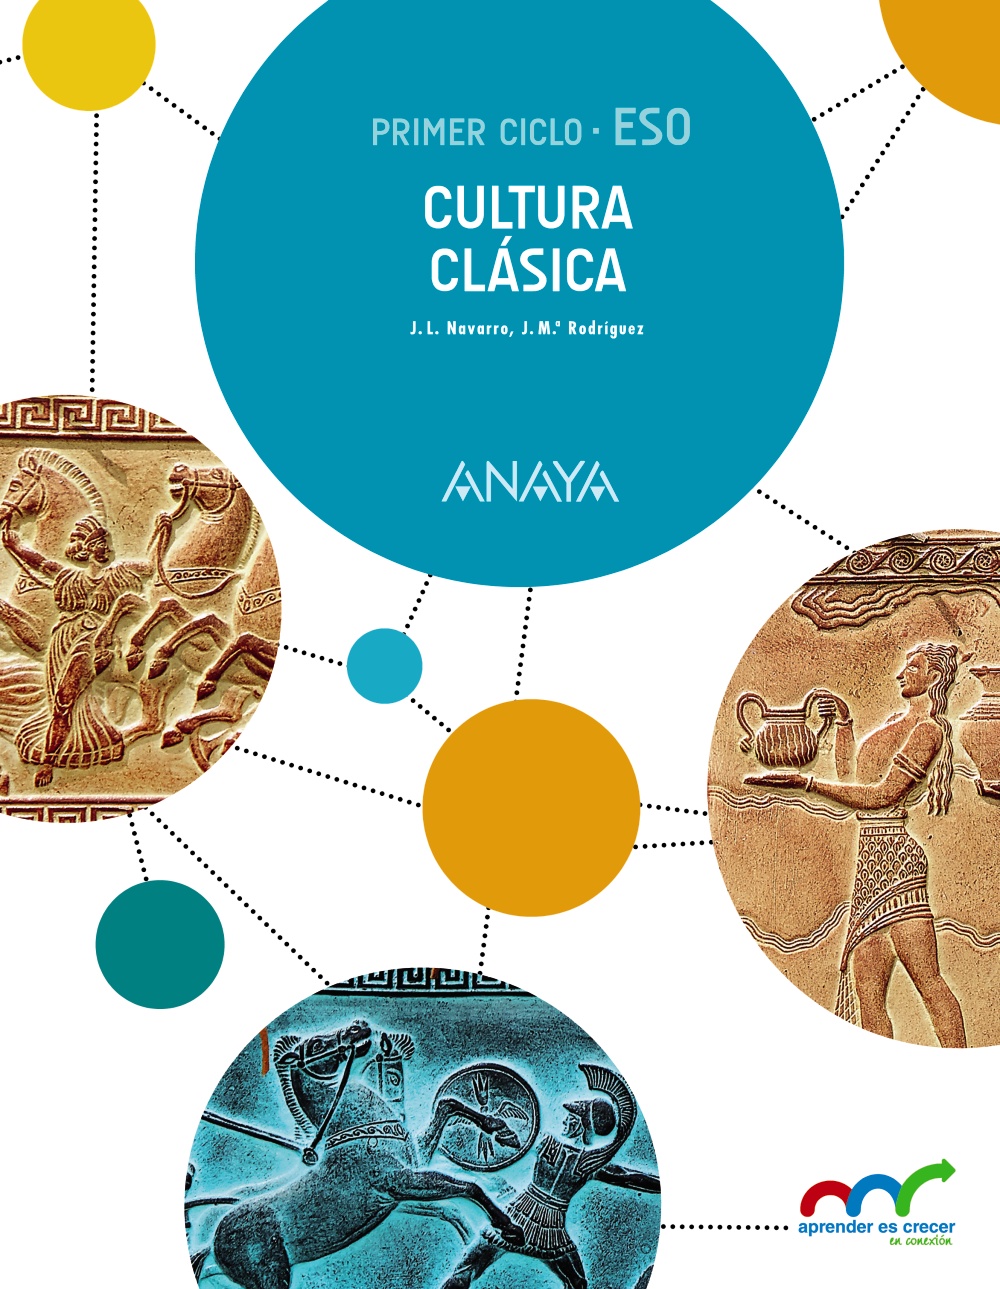 Solucionario Cultura Clasica 2 ESO Anaya Aprender es Crecer PDF Ejercicios Resueltos-pdf